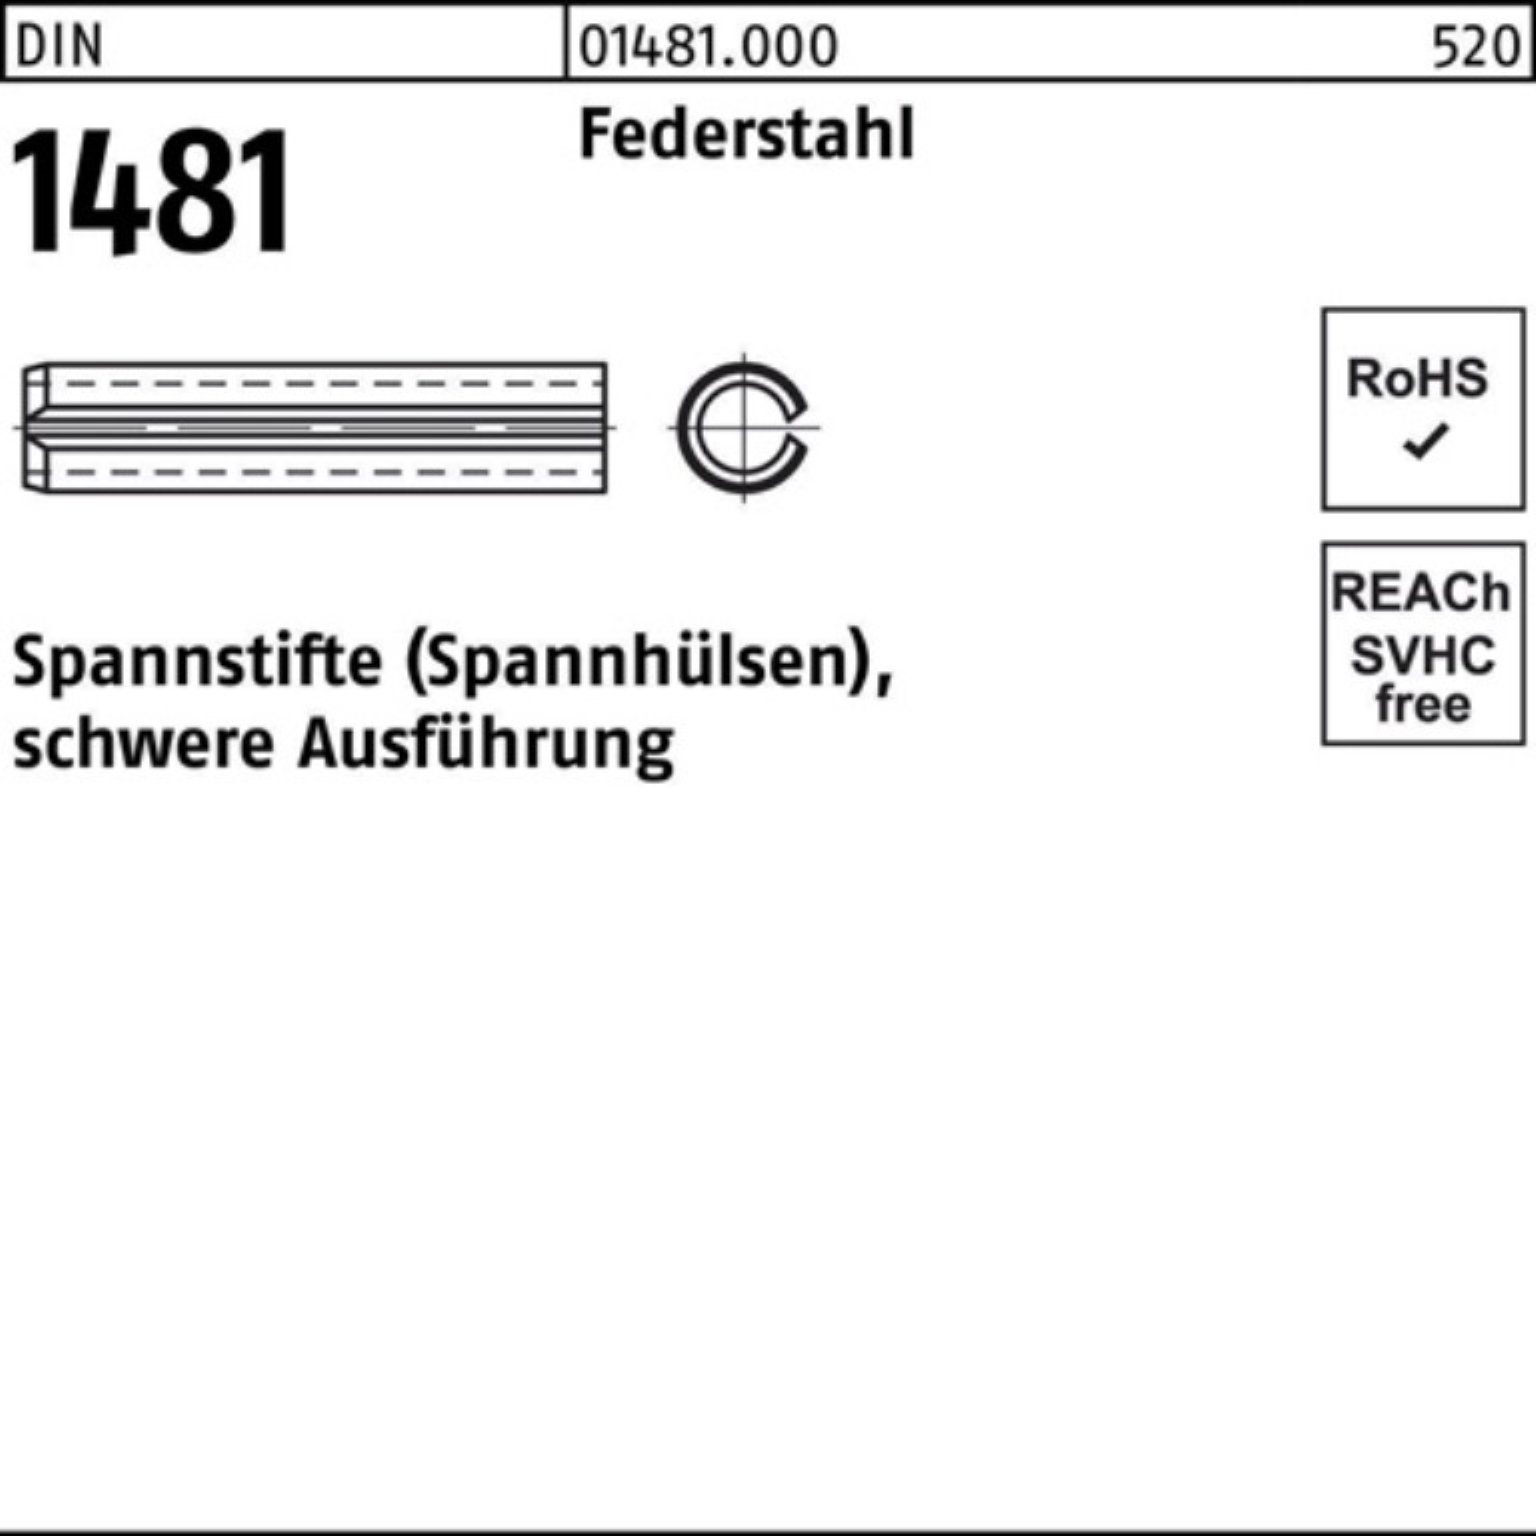 Reyher Spannstift 100er Pack Spannstift DIN 1481 10x 10 Federstahl schwere Ausführung 1